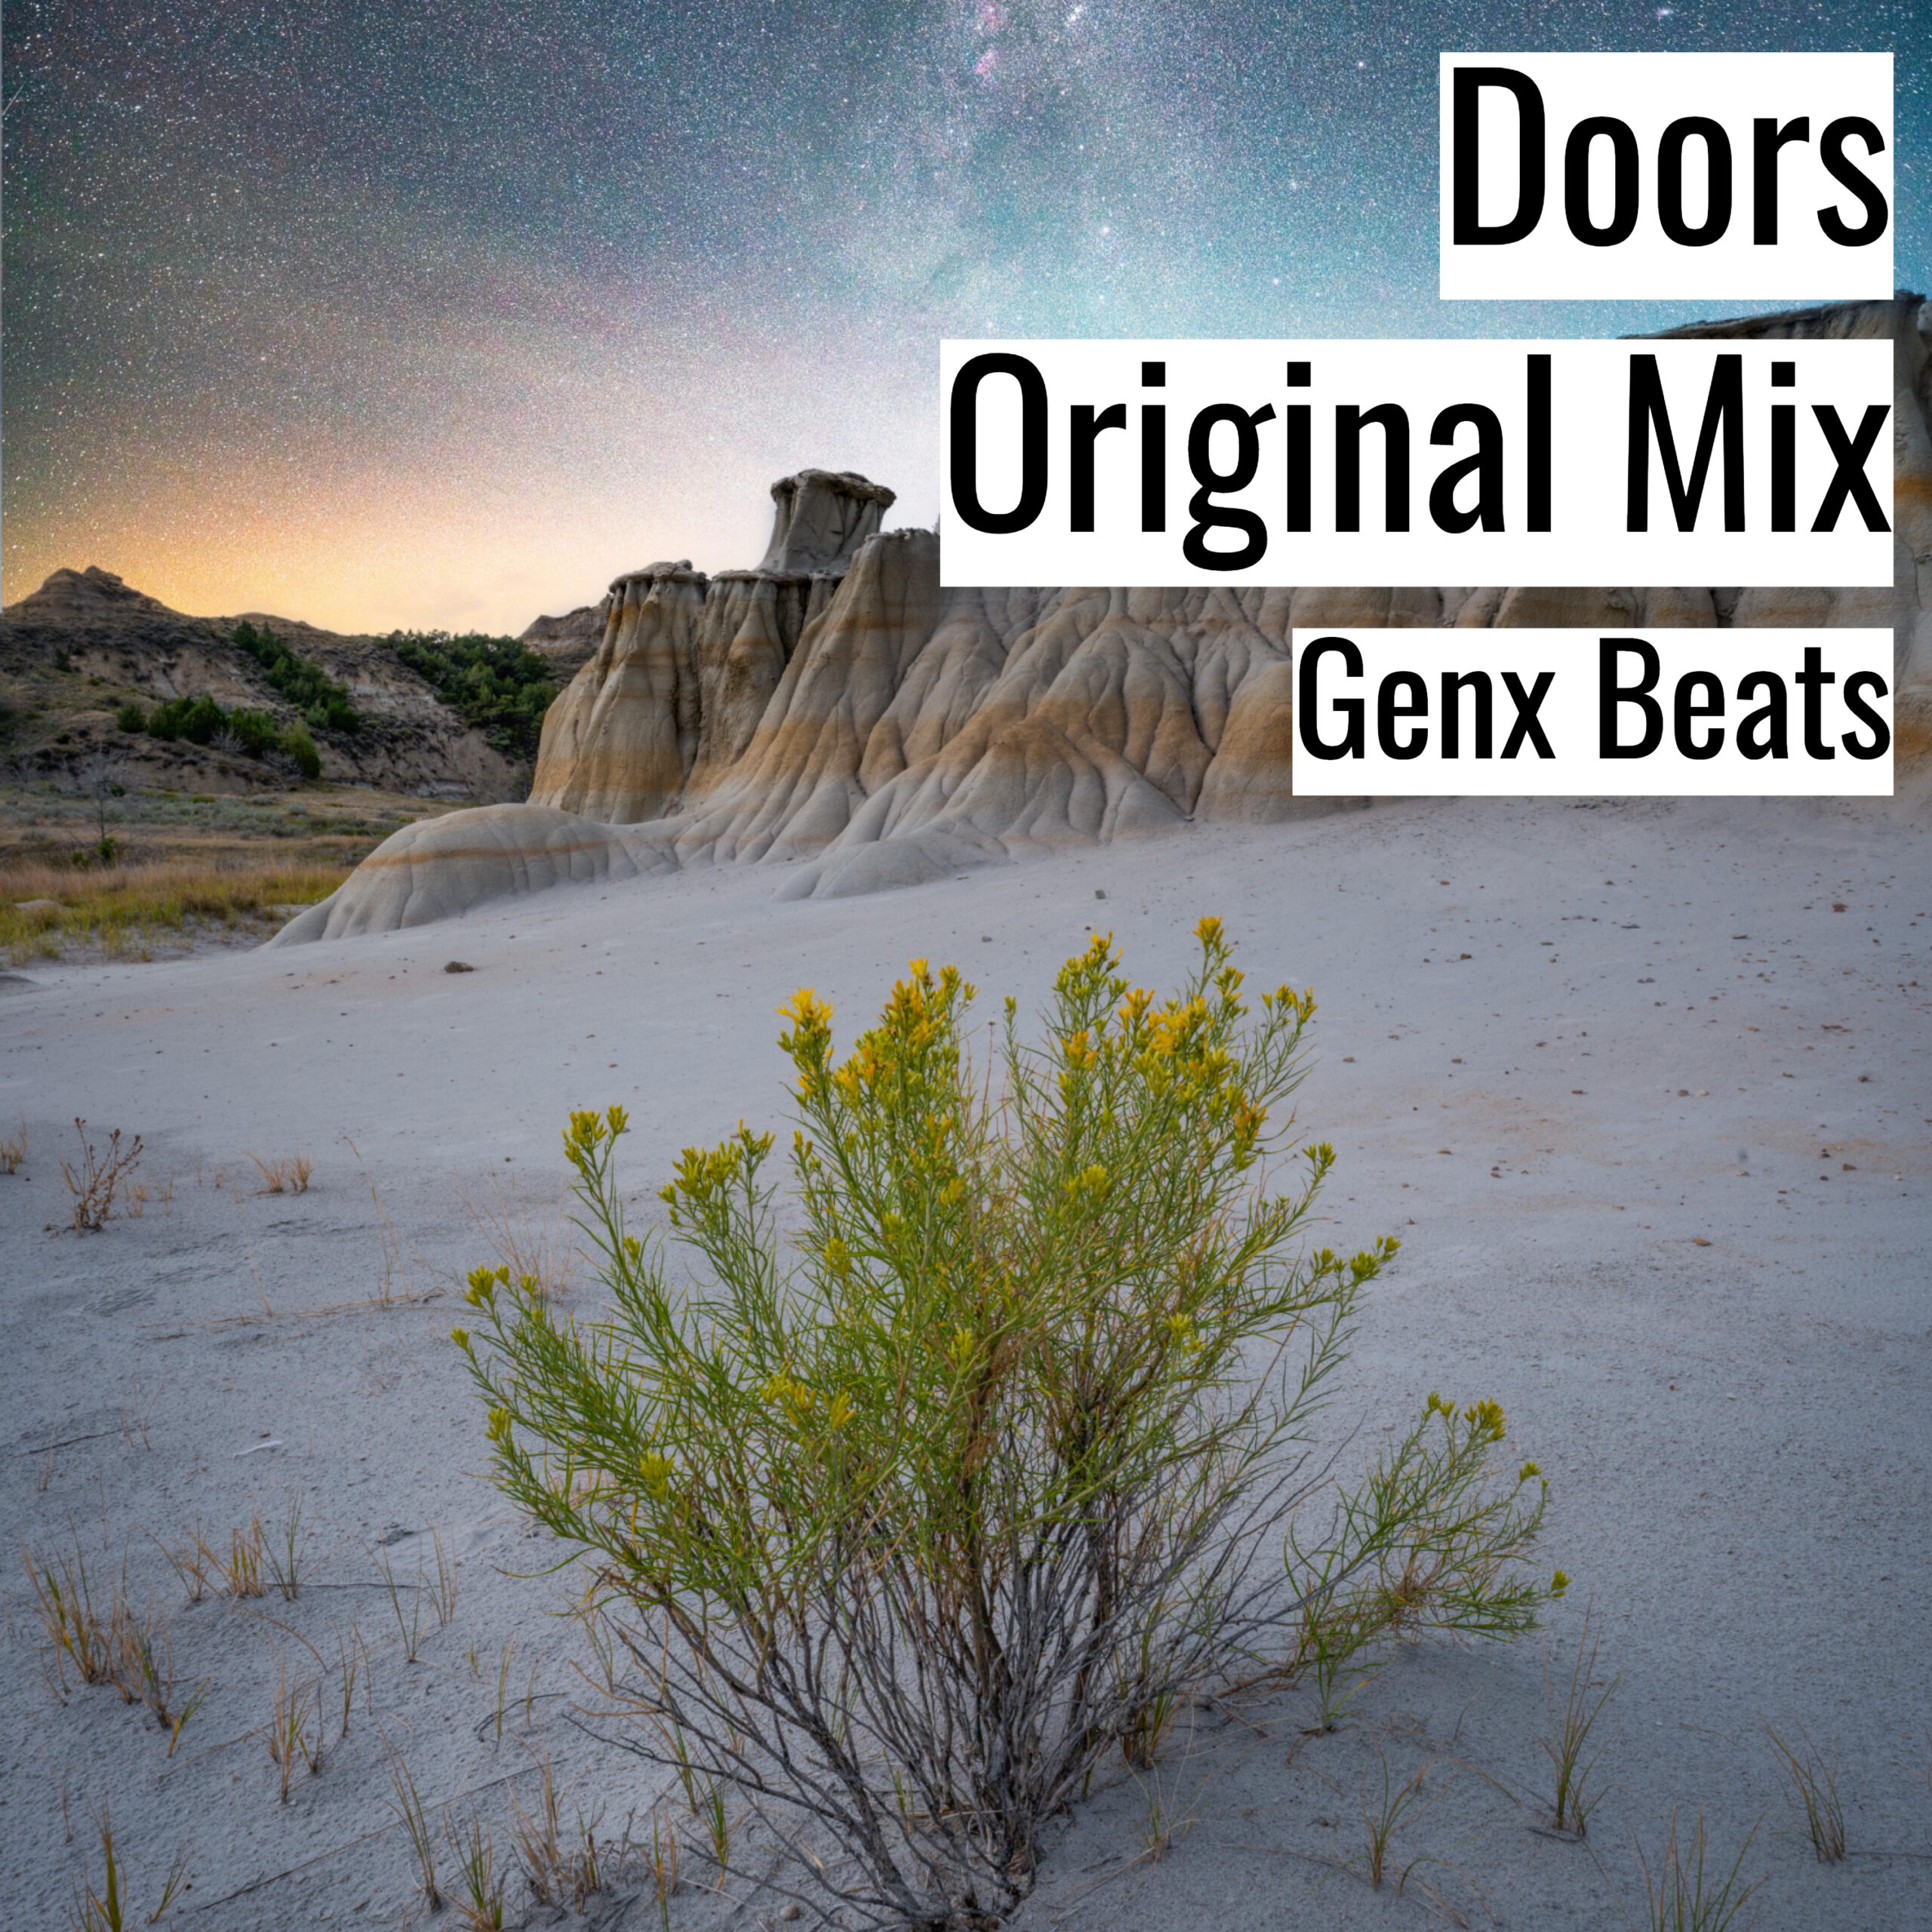 Doors Original Mix scaled